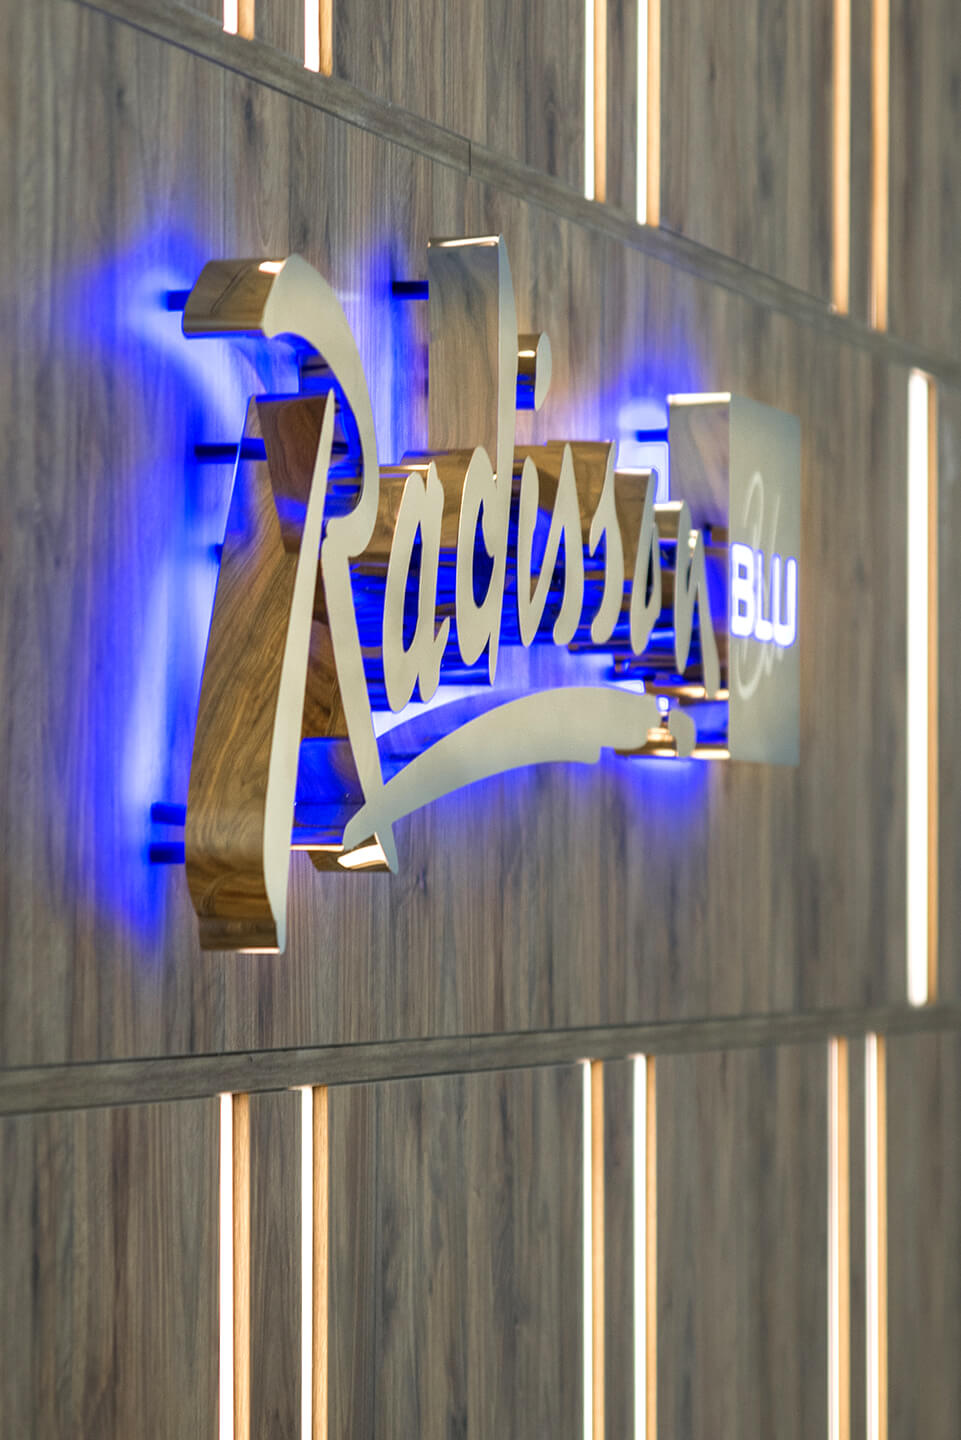 radisson-blauwe-letters-van-zilver-plaat-gouden-letters-behind-receptie-in-hotel-op-een-houten-muur-licht-van-behind-blauw-sopot-logo-company-exclusief-glamour